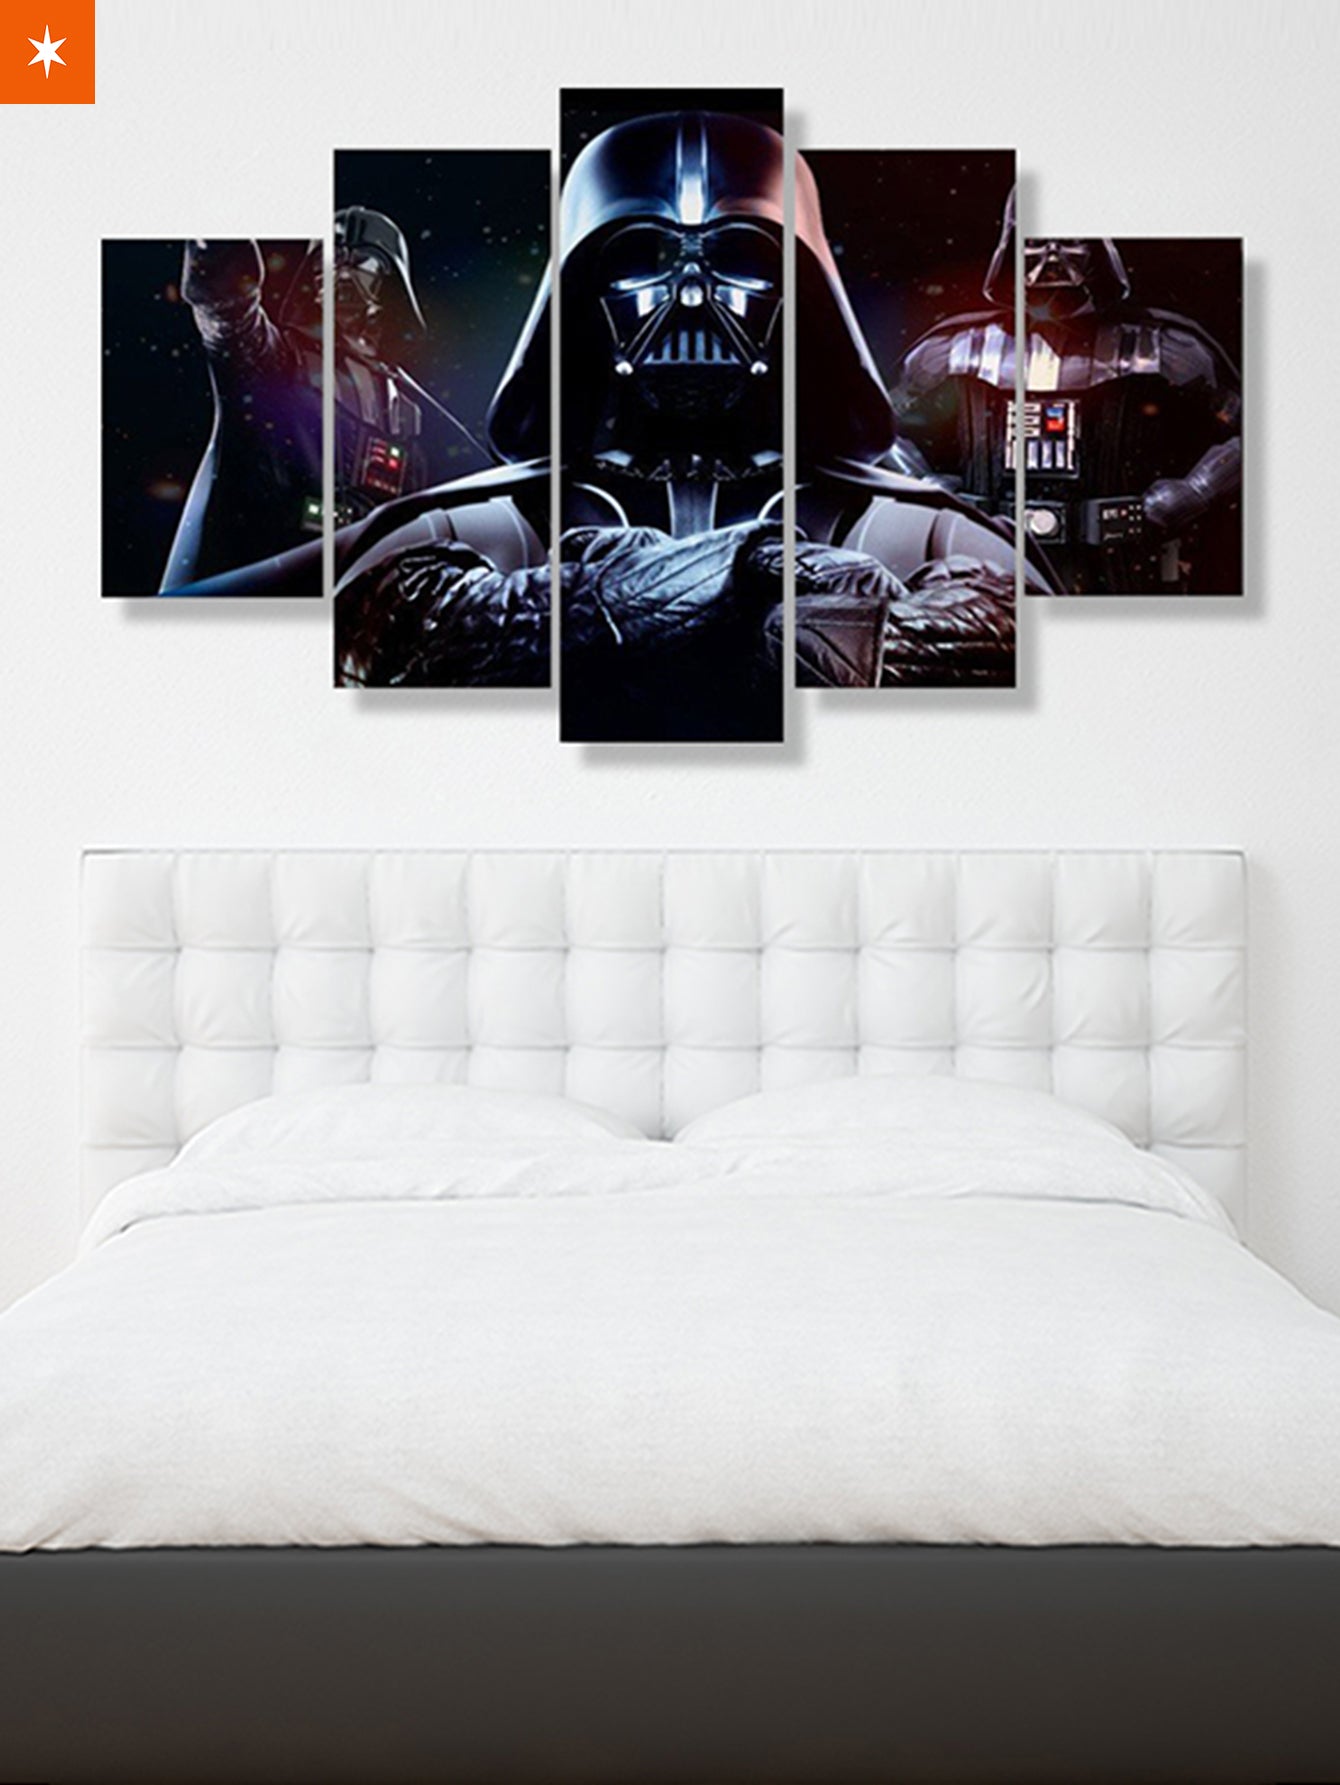 Fandomaniax - 3 Darth Vader 5 Piece Canvas